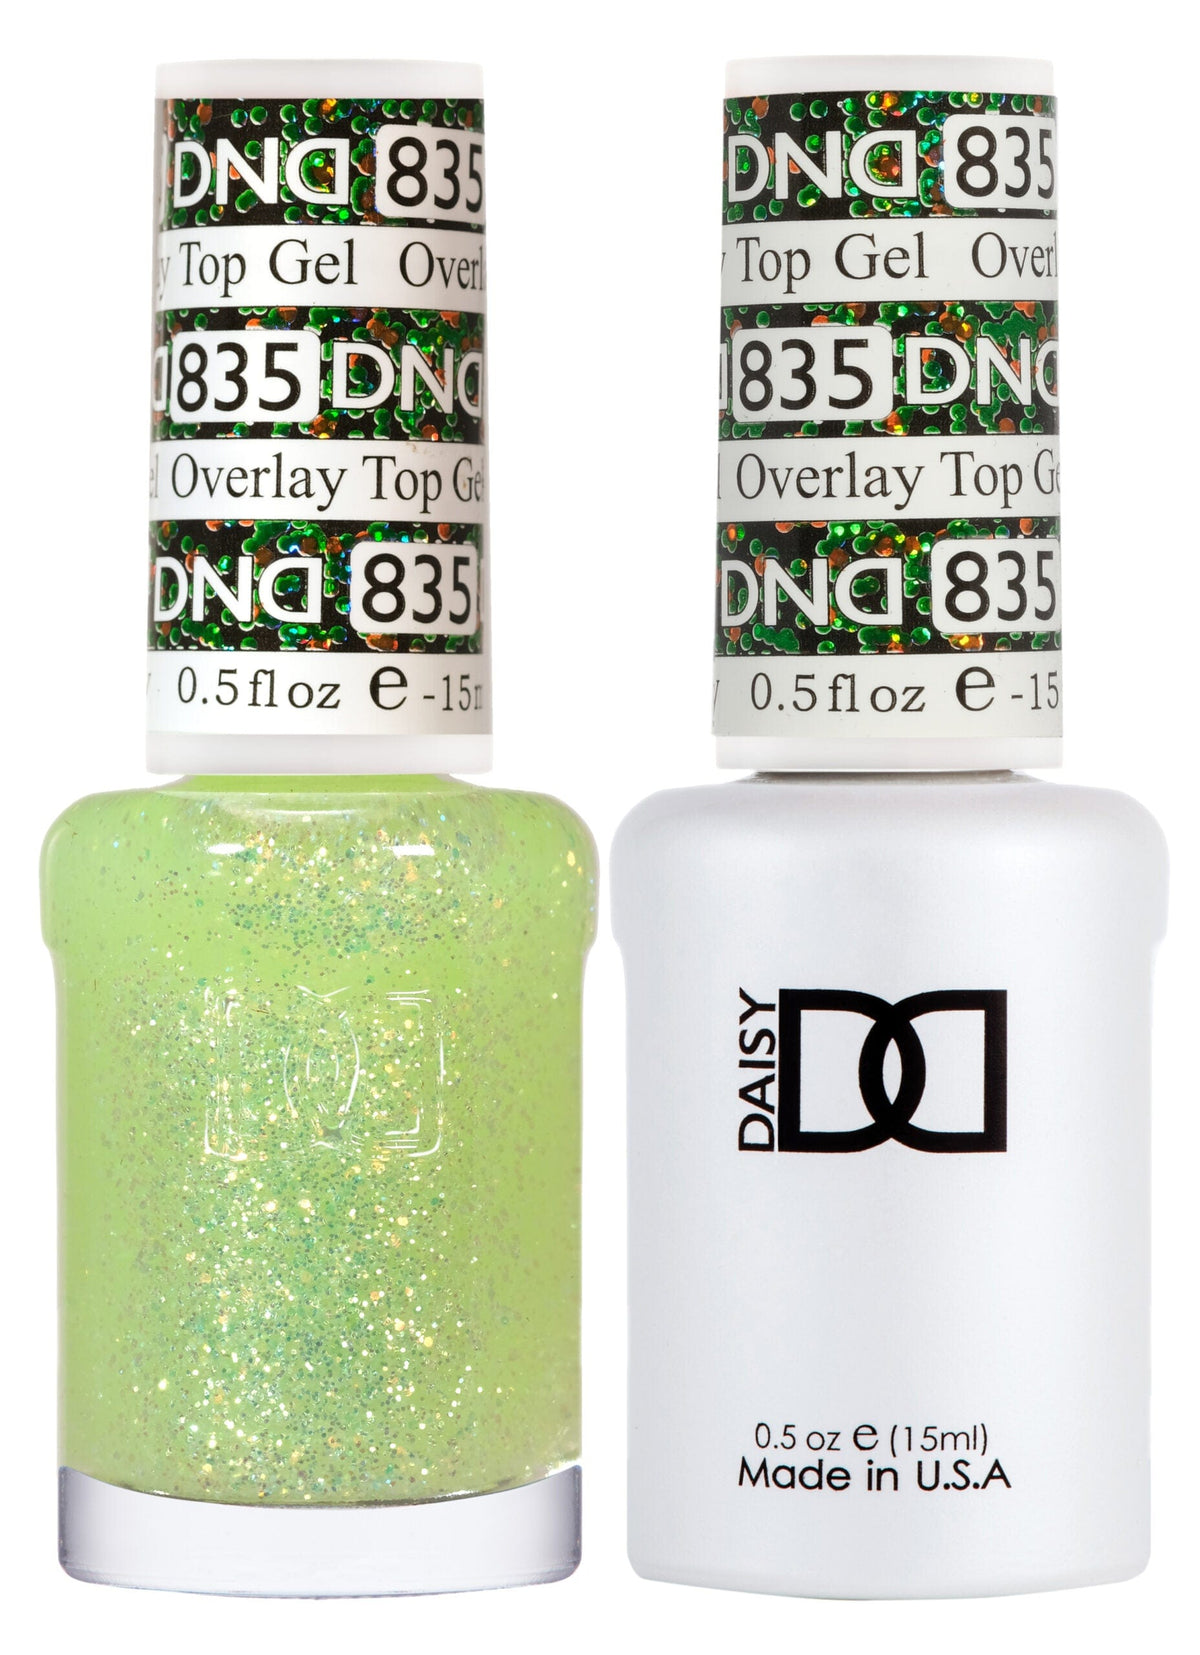 DND Duo Gel Matching Color 835 Overlay Top Gel